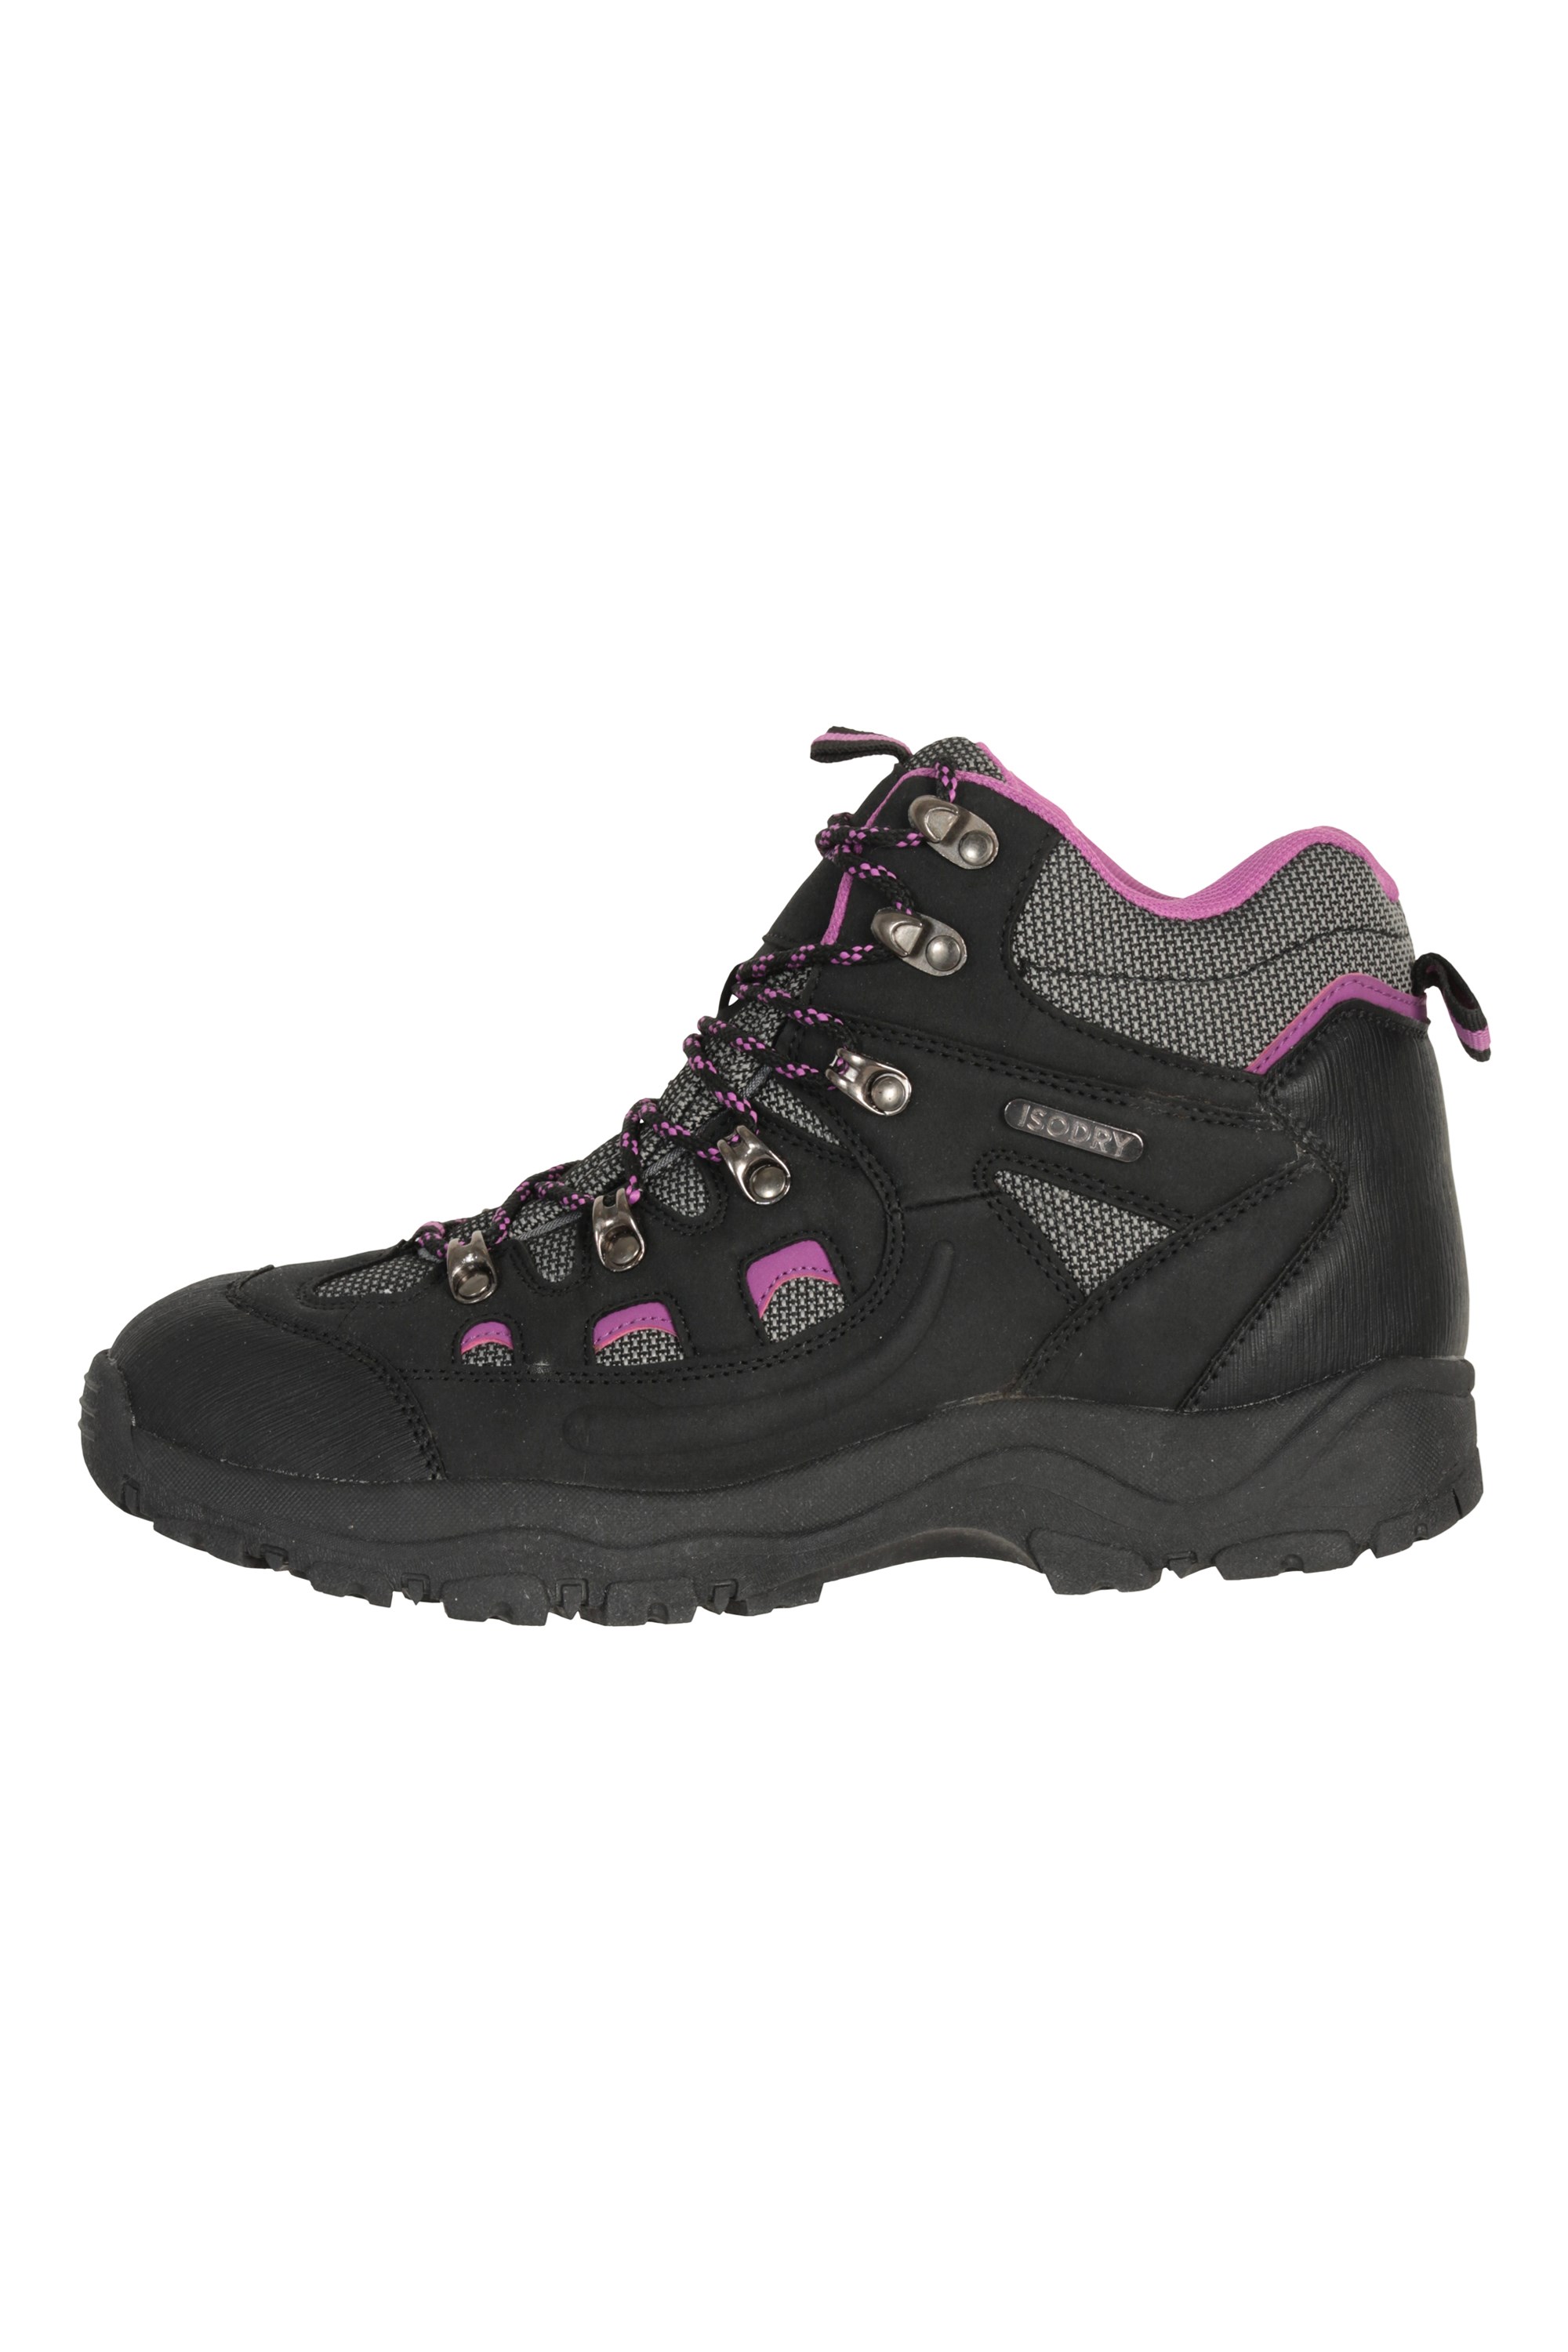 mountain warehouse adventurer womens waterproof boots